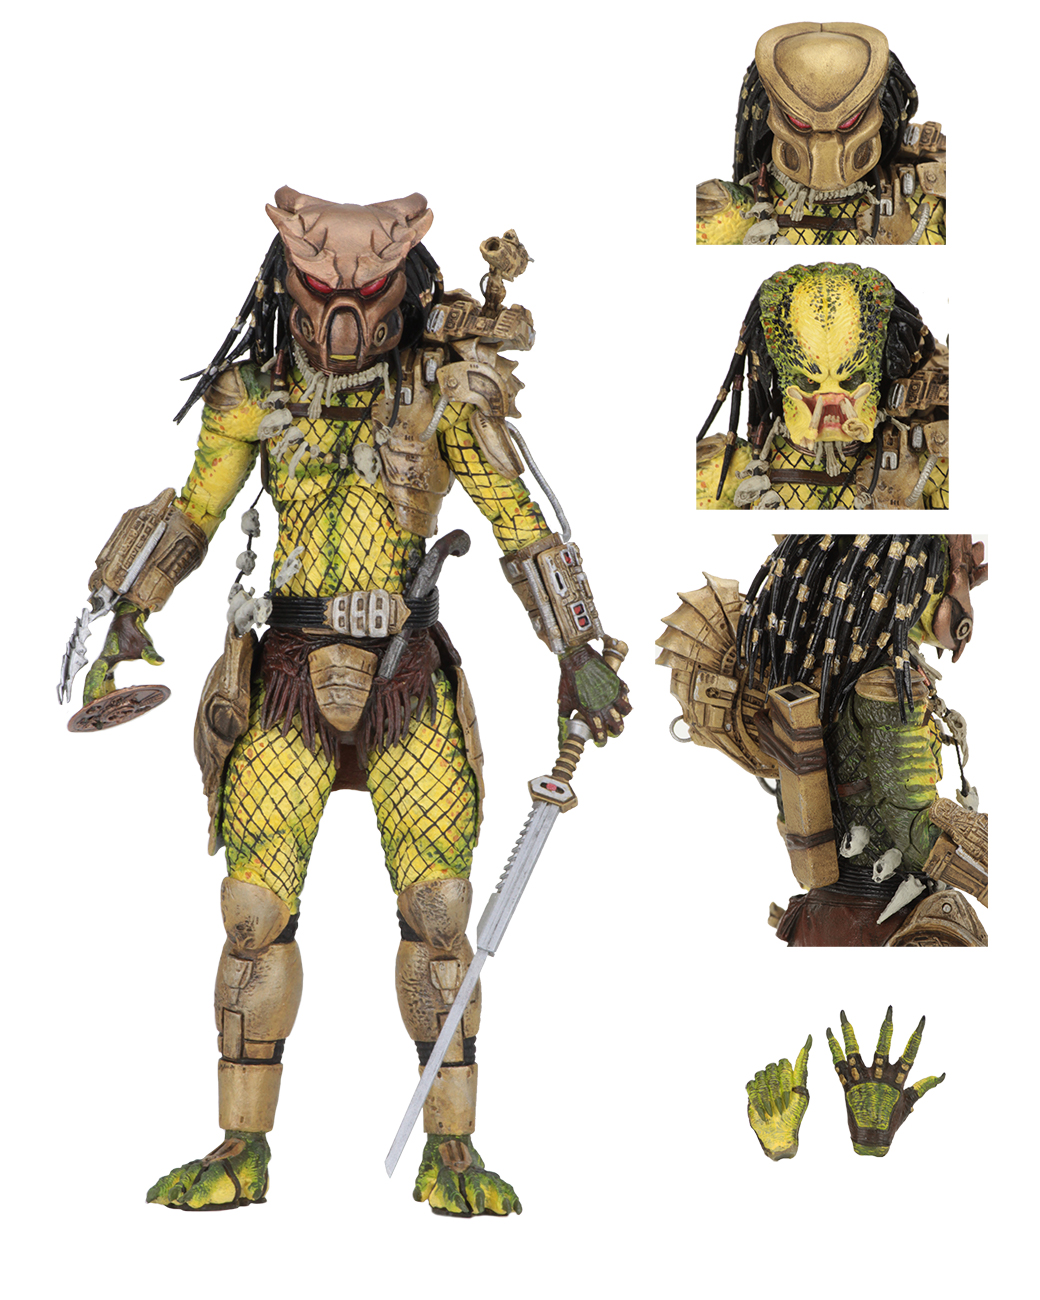 Predator 2 – 7” Scale Action Figure – Ultimate Elder: The Golden 